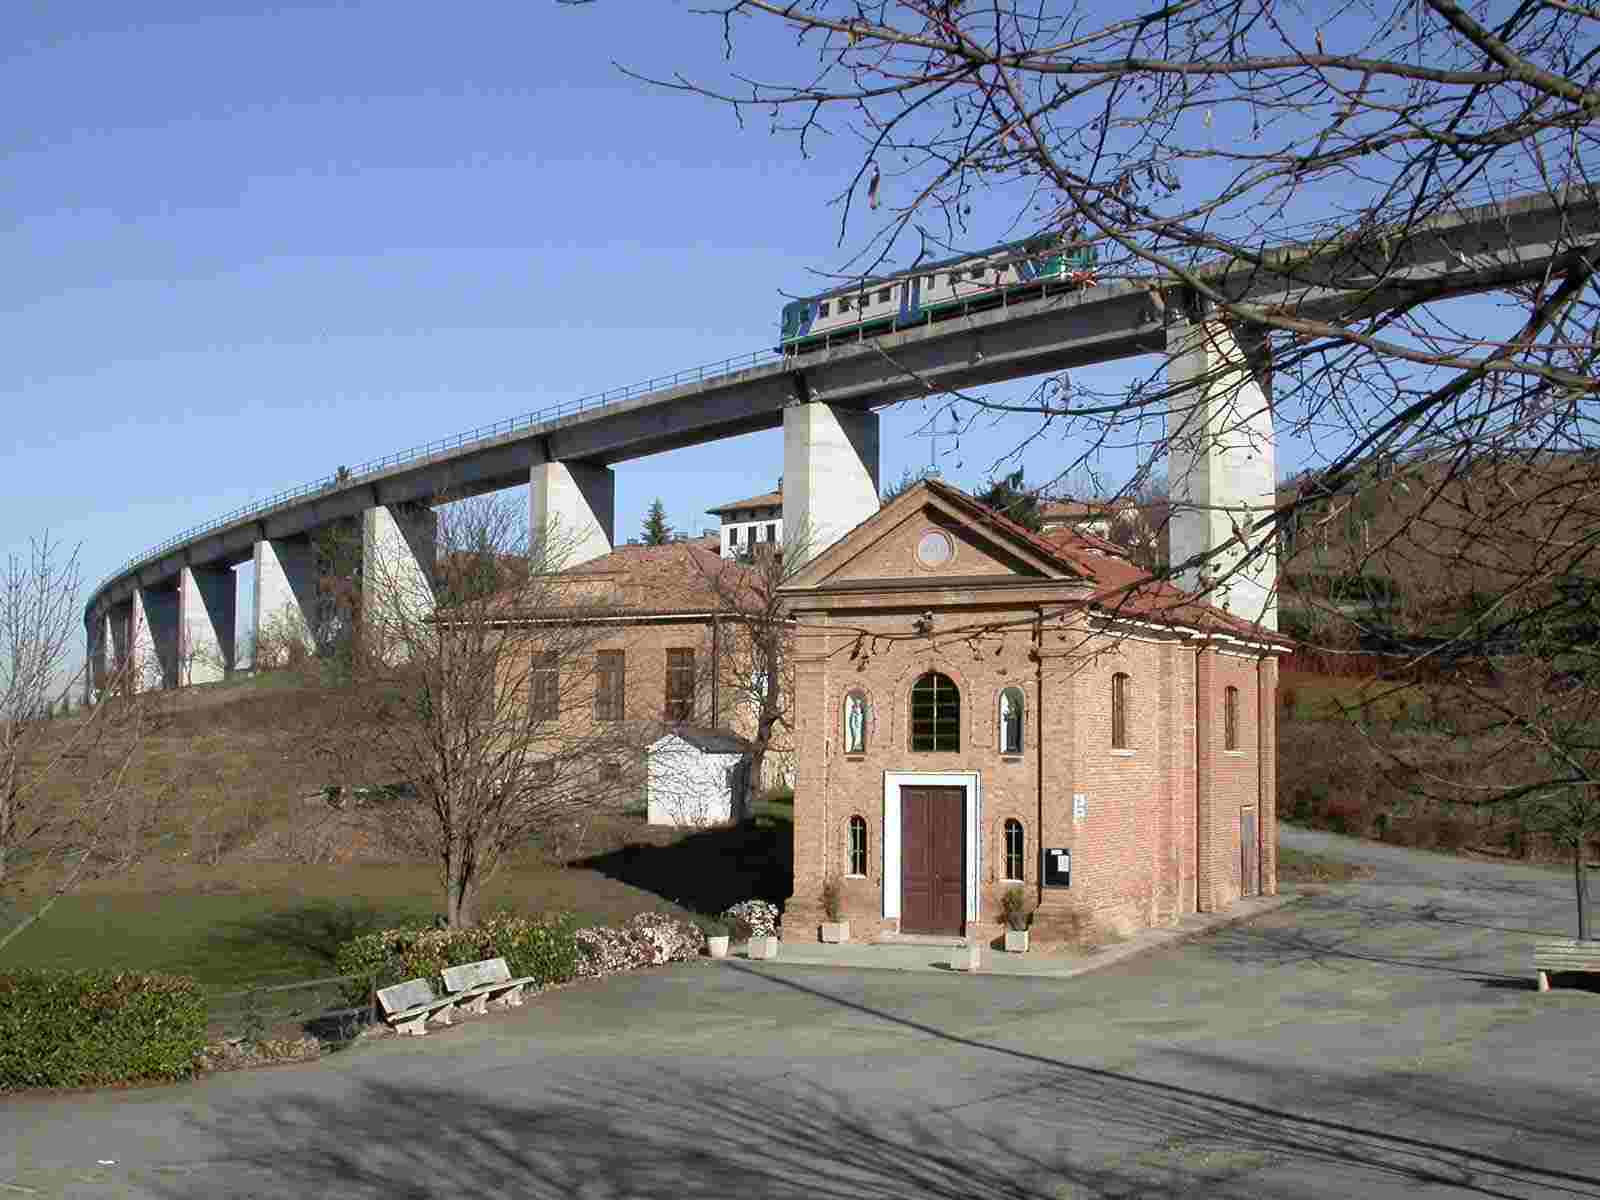 Viadotto di Castagnole Lanze a forte impatto paesaggistico